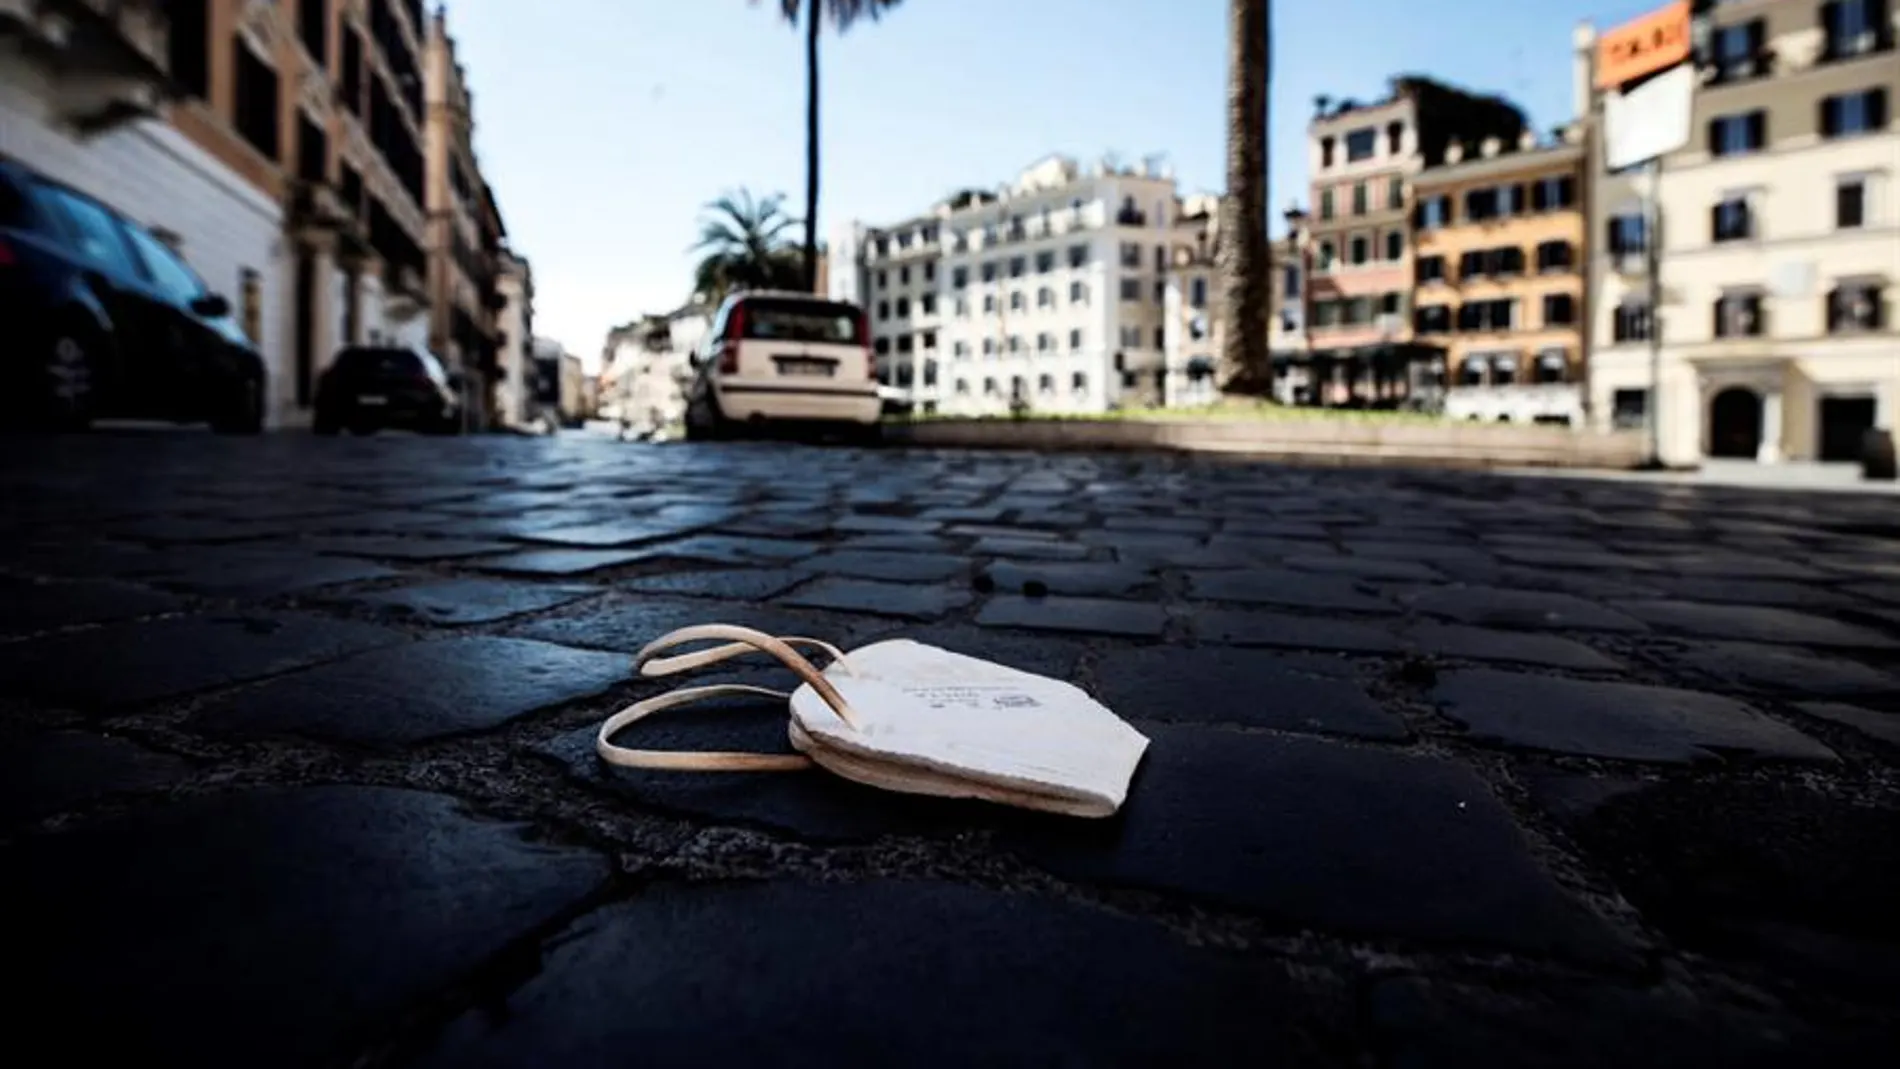 Una mascarilla abandonada en el suelo de la Piazza Spagna, en Roma